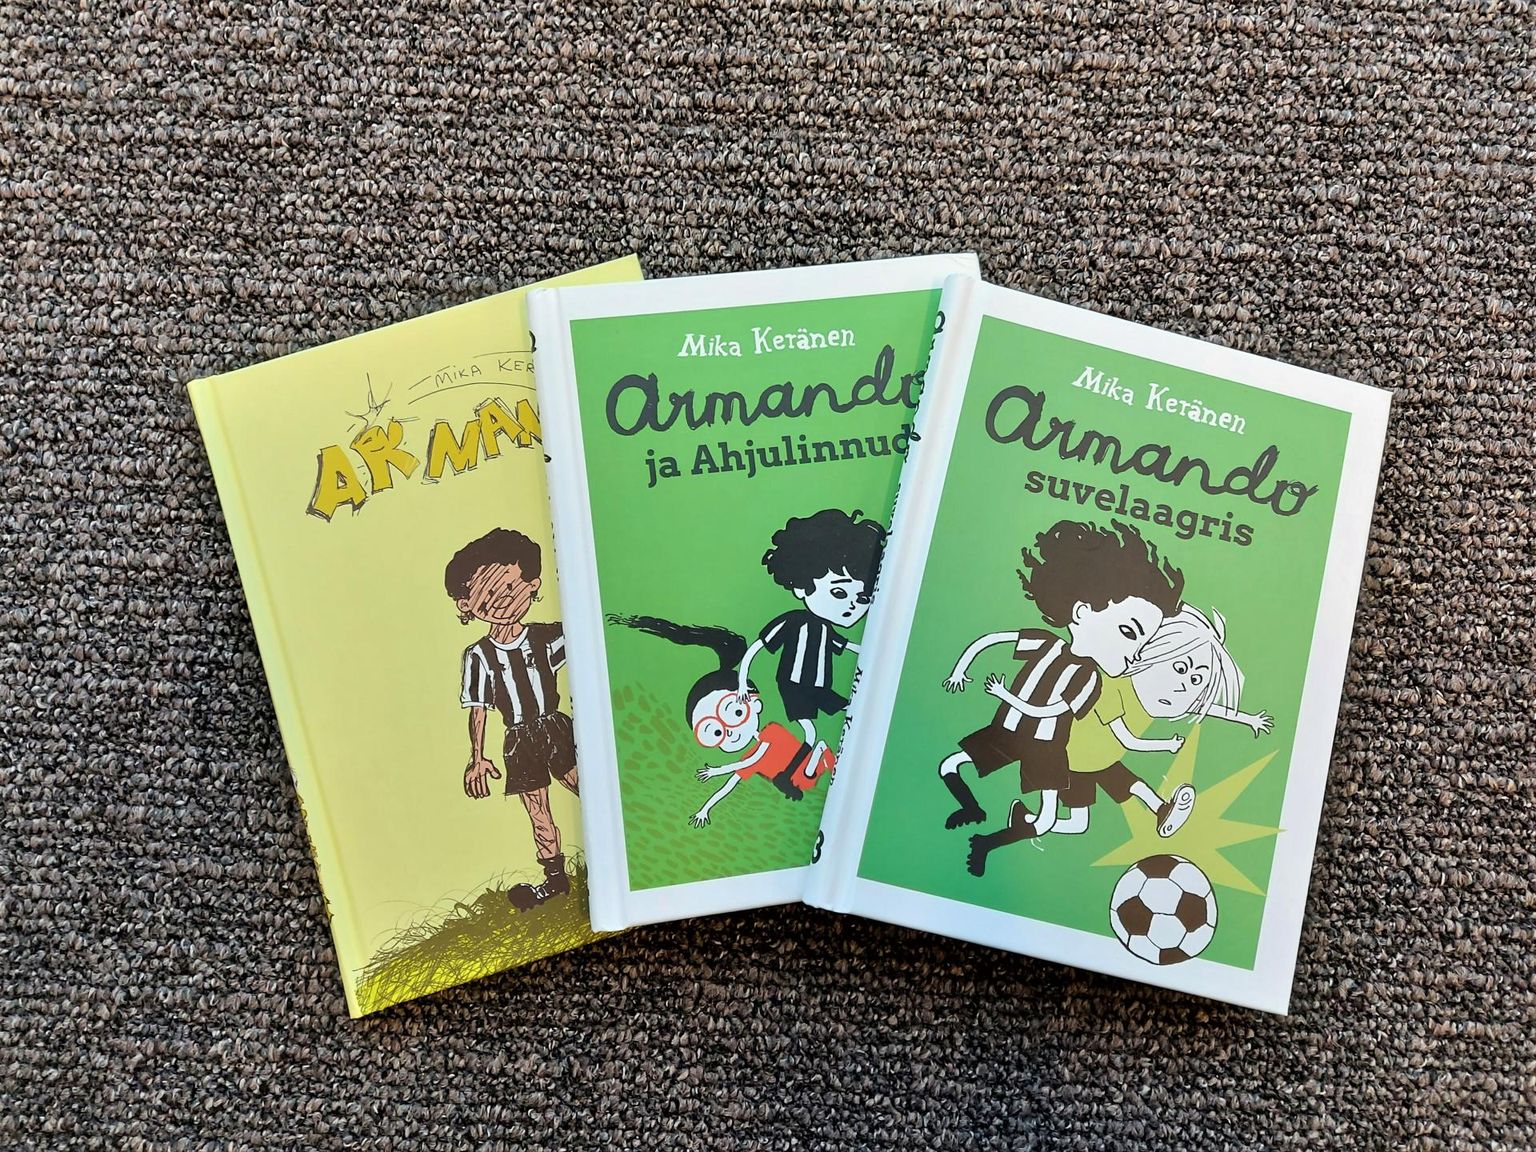 Jalgpallihuviline kirjanik Mika Keränen on noortele lugejatele kirjutanud jutustused «Armando» (vasakult), «Armando ja Ahjulinnud» ning «Armando suvelaagris».